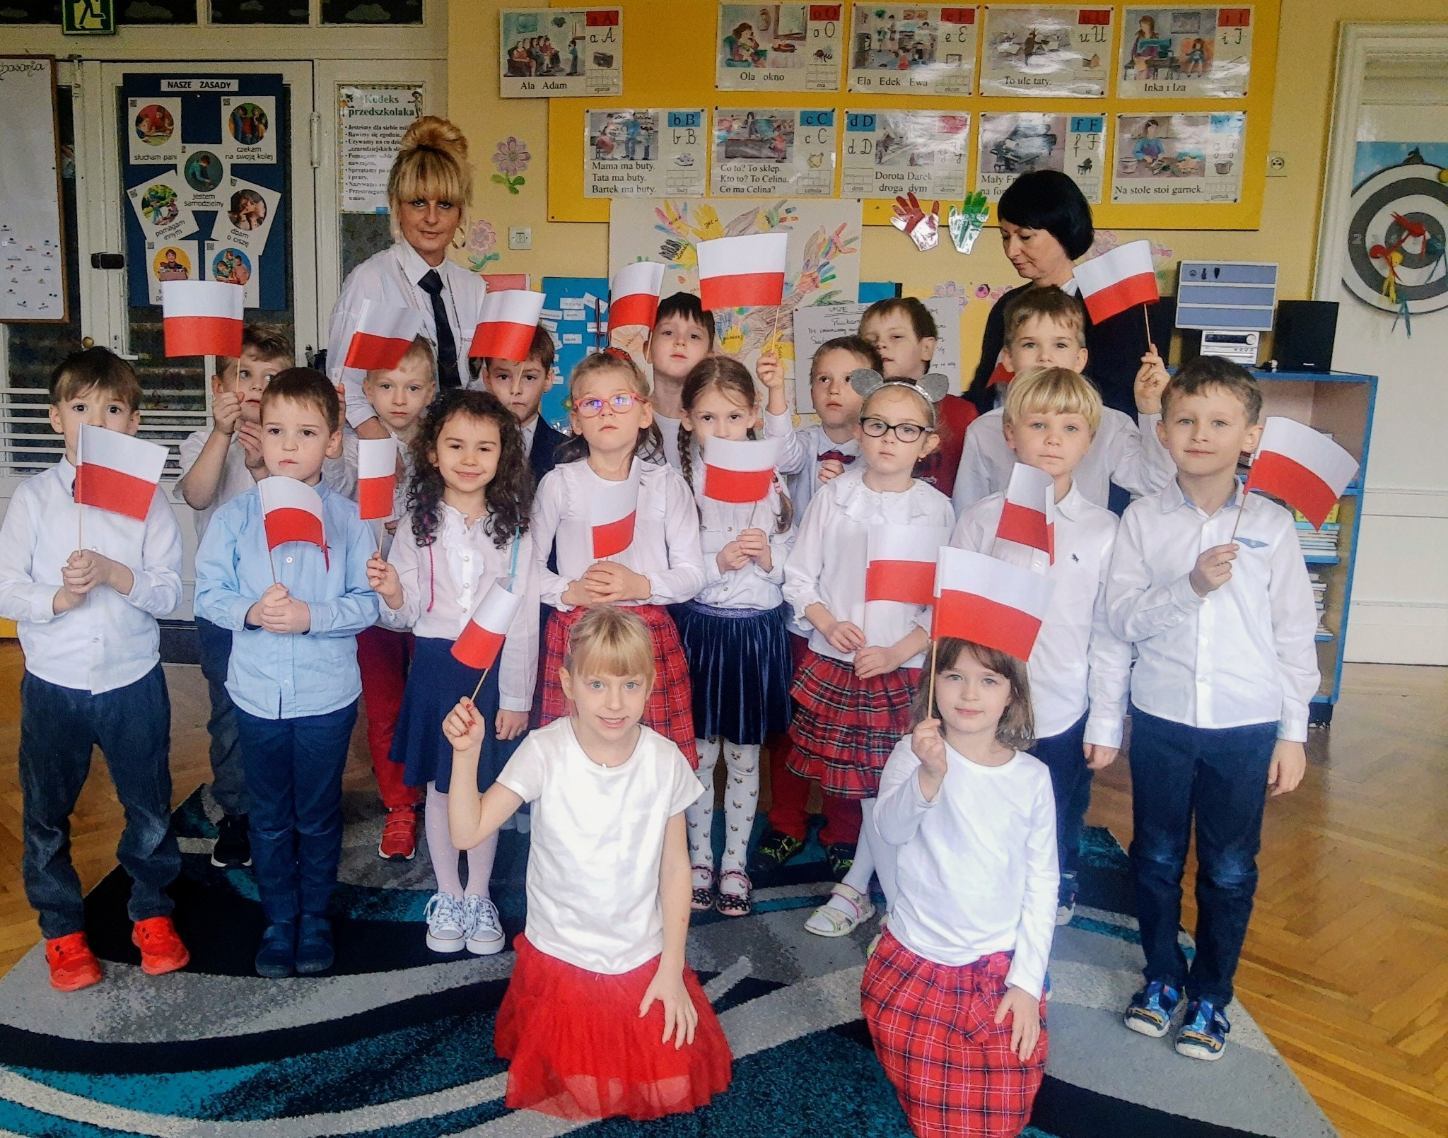 Na zdjęciu grupa Żabek wraz z nauczycielką w biało-czerwonych ubraniach z flagami Polski.